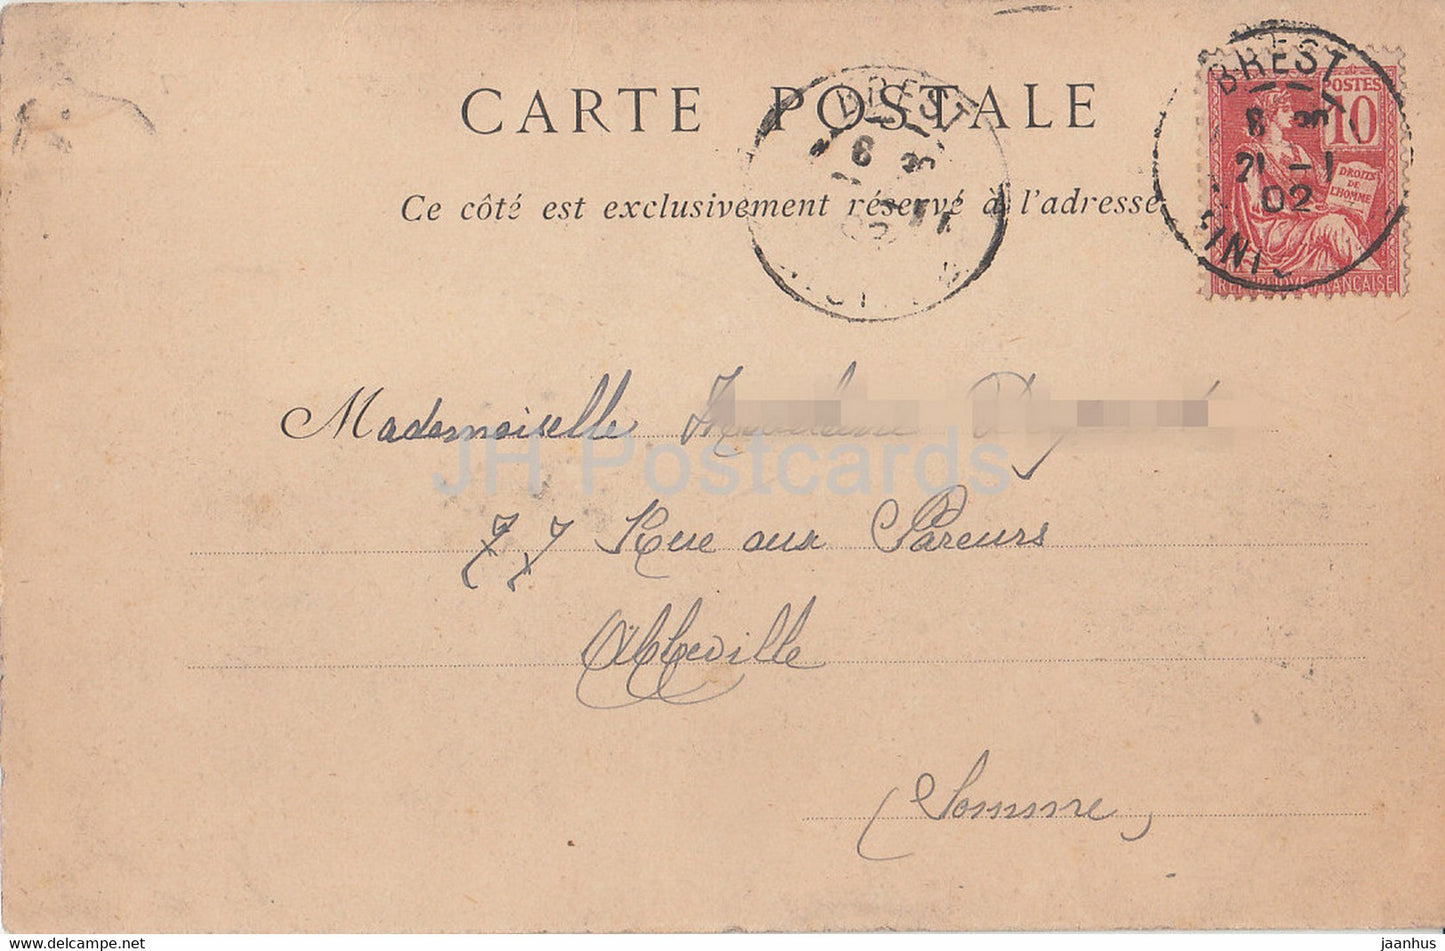 La Jetée un Jour de Tempête - 9 - phare - carte postale ancienne - 1902 - France - occasion